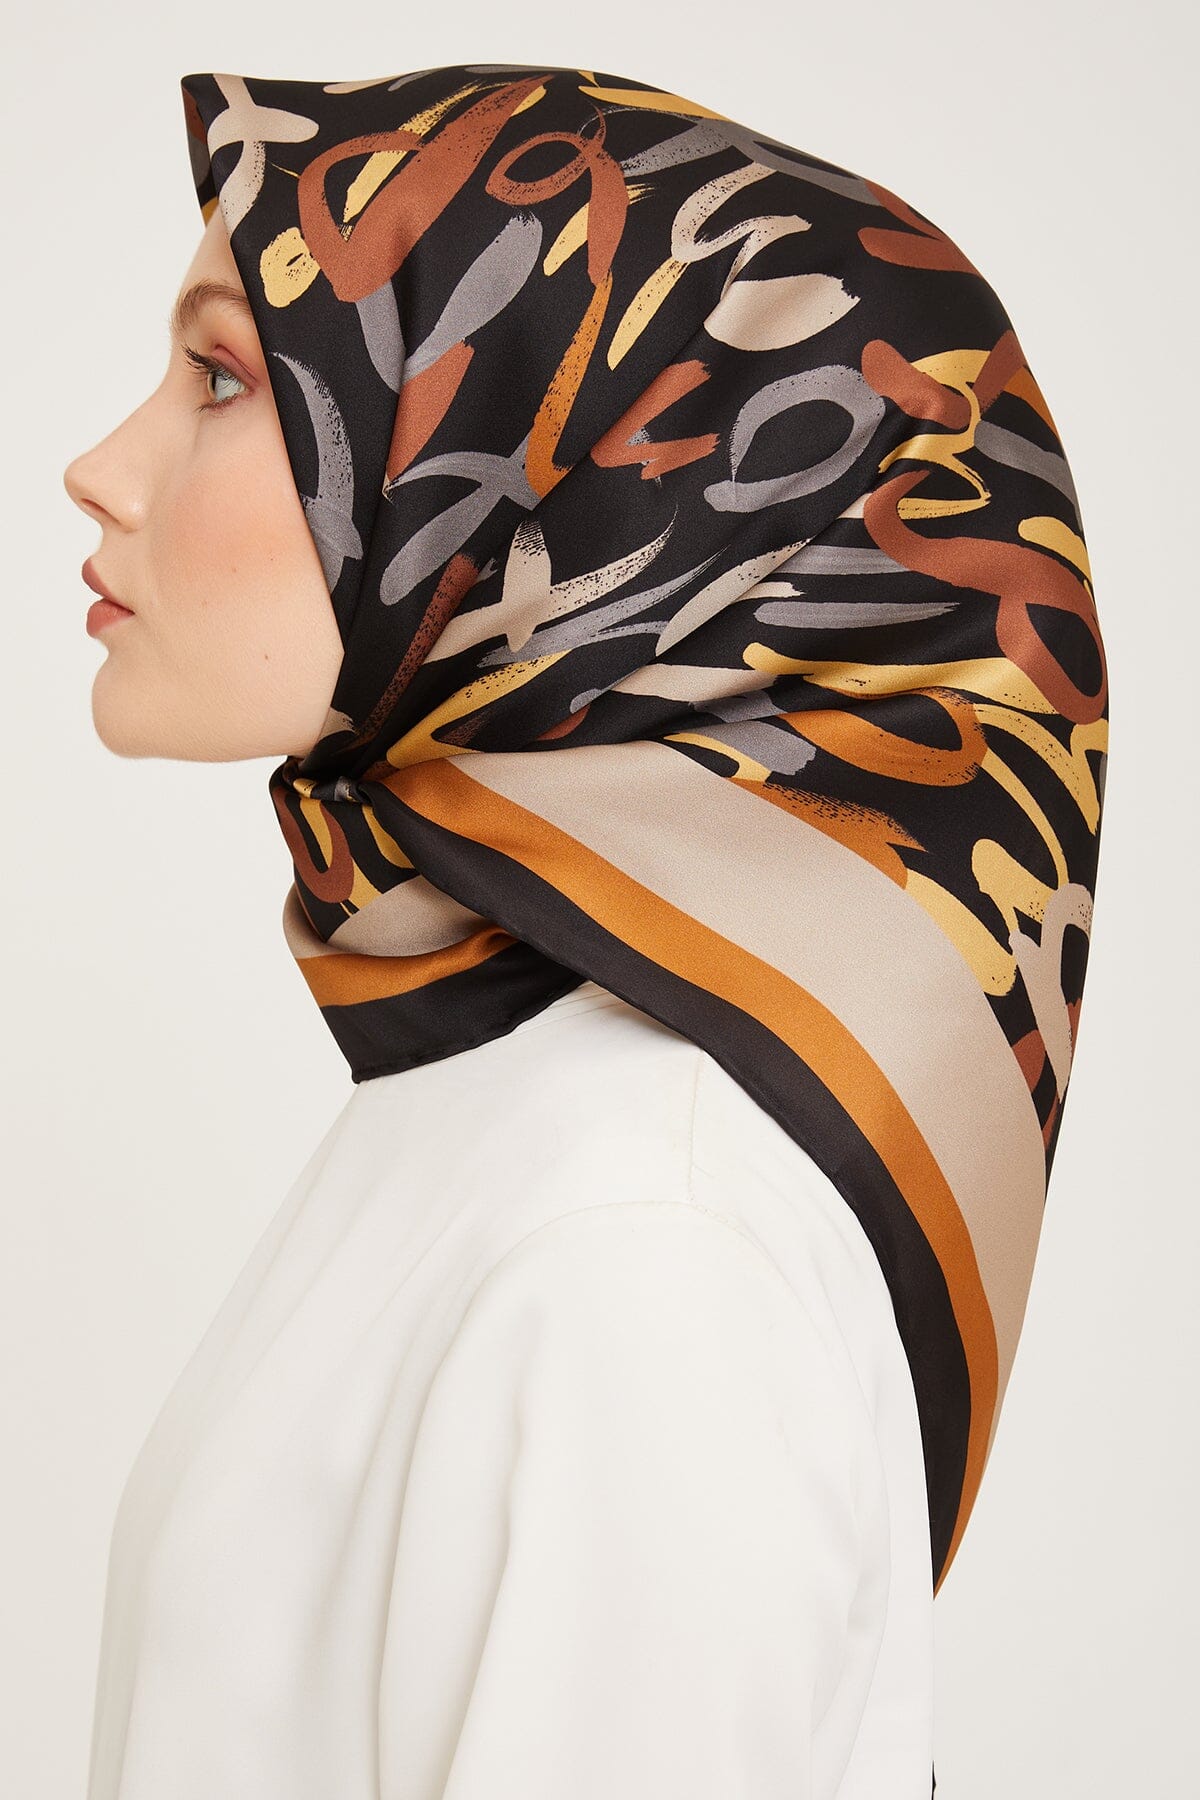 Armine Nudle Designer Silk Scarf #5 Silk Hijabs,Armine Armine 